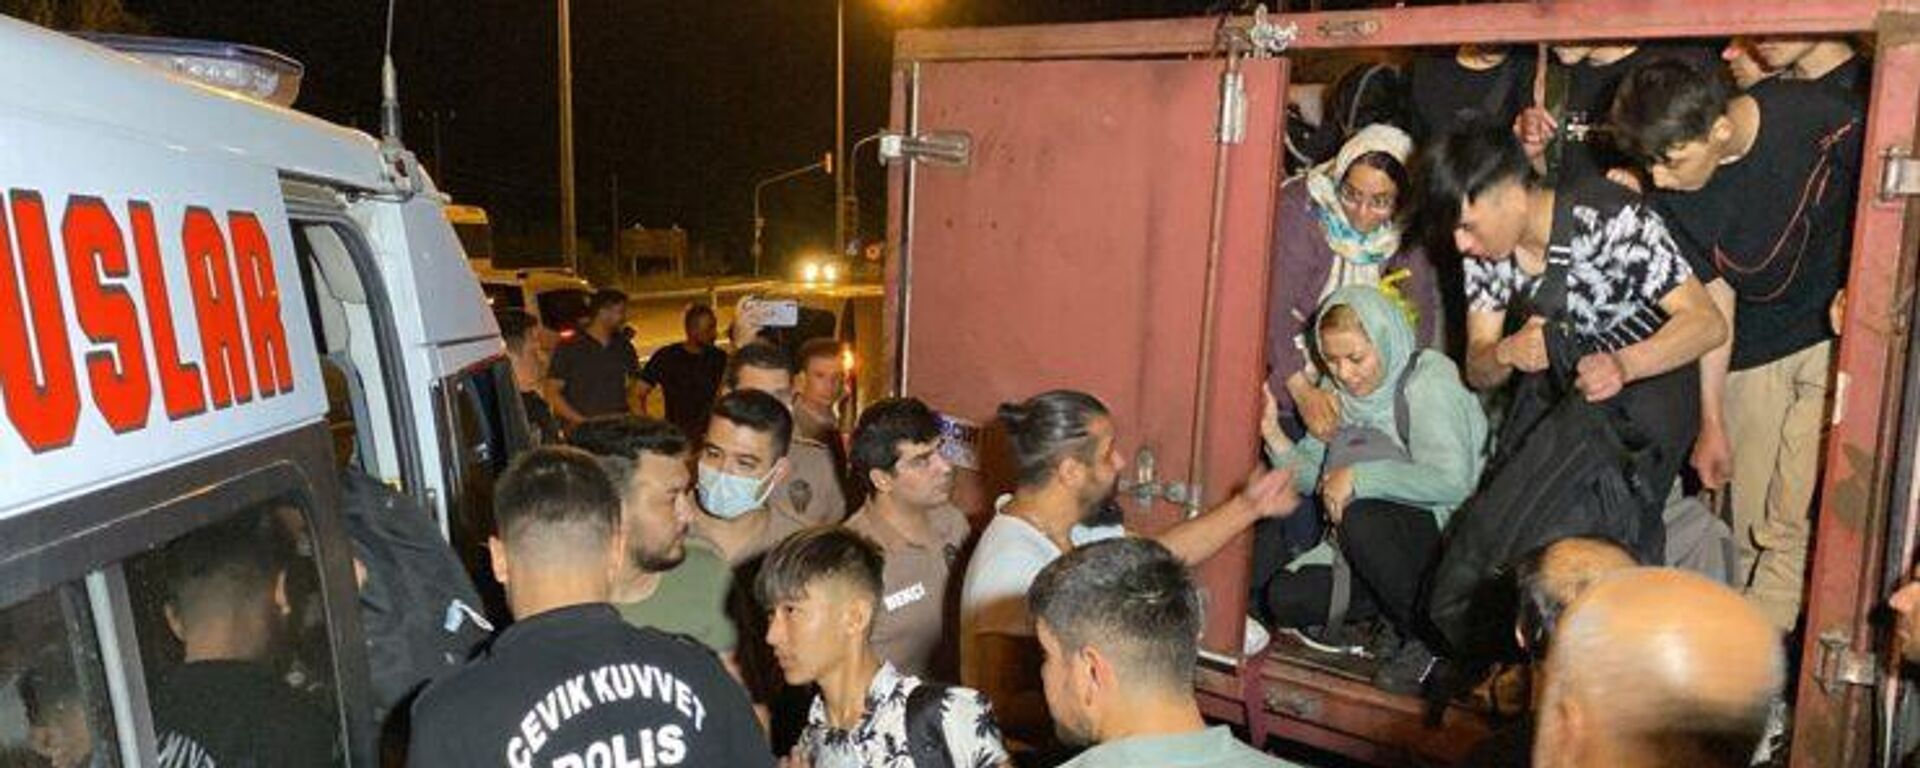 Aydın'ın Sultanhisar ilçesinde kamyonun kasasında 70 kaçak göçmen yakalandı. - Sputnik Türkiye, 1920, 26.07.2022